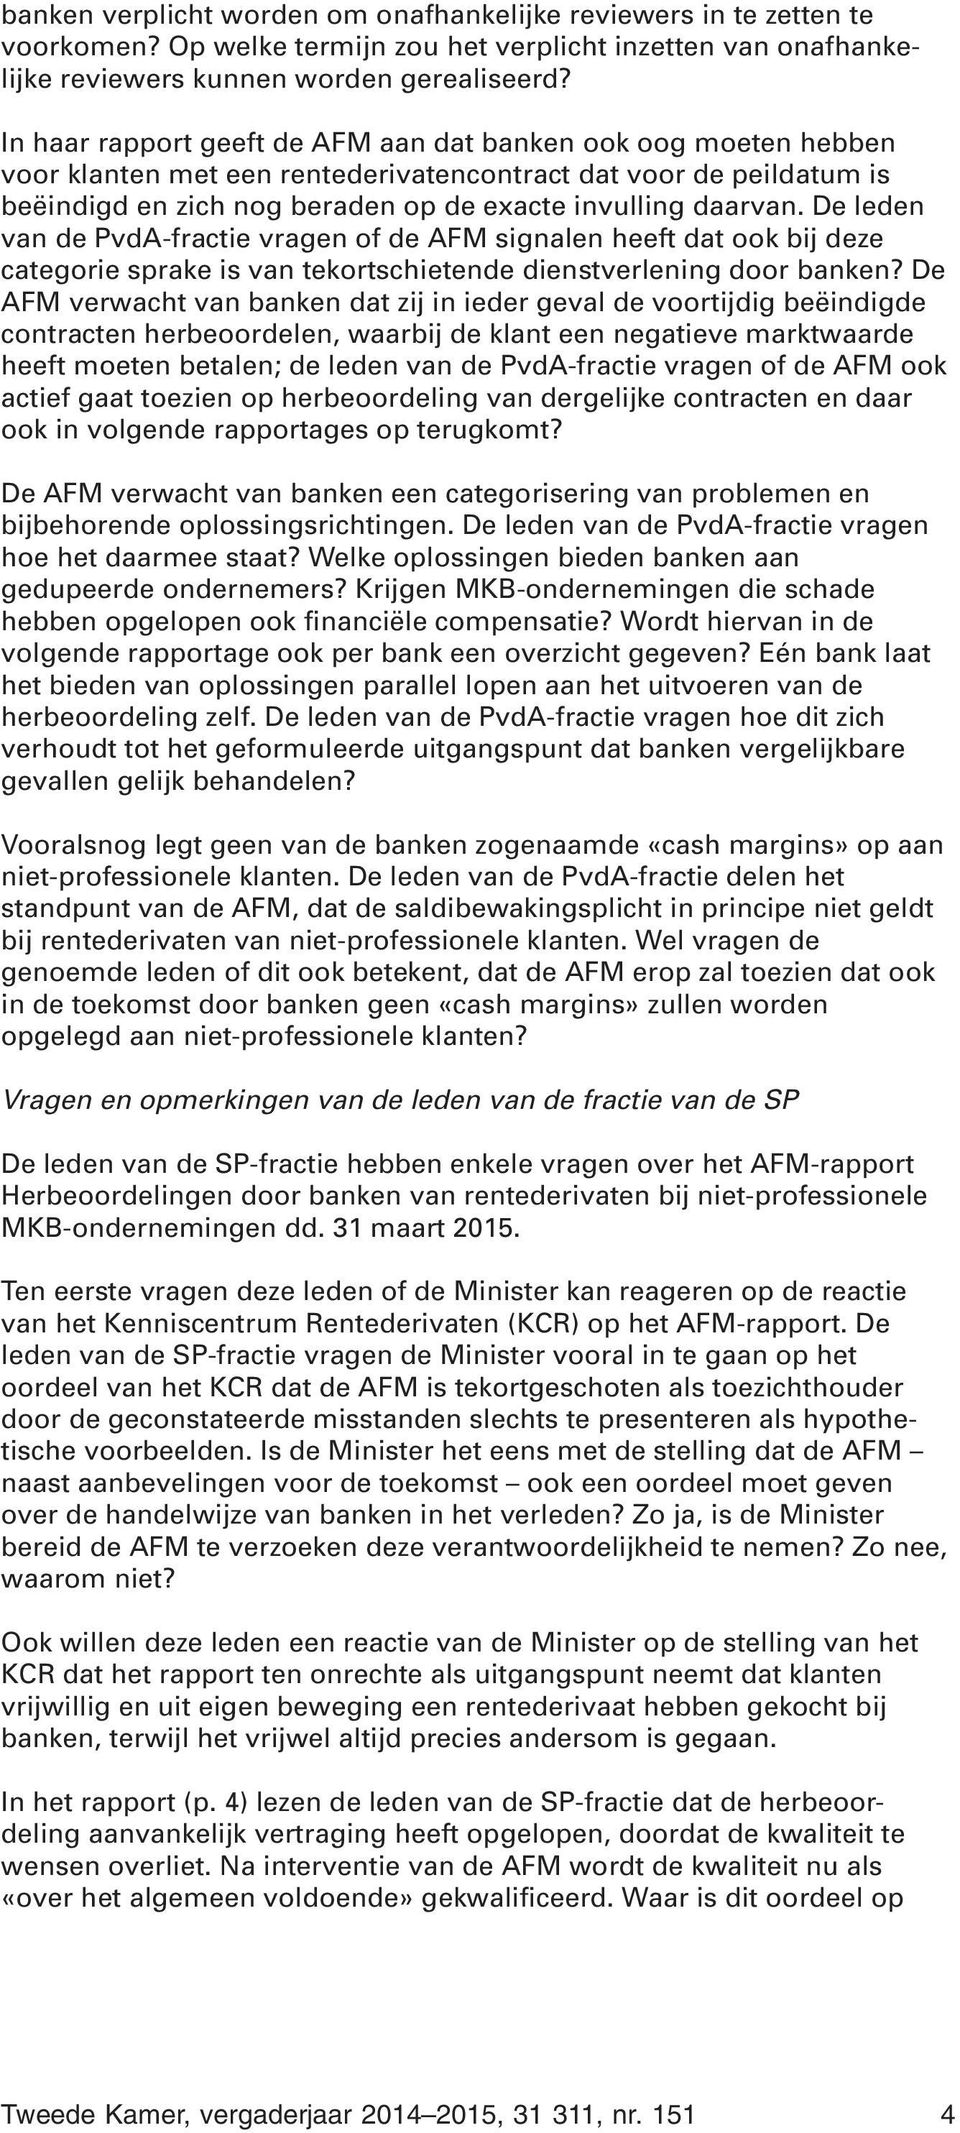 De leden van de PvdA-fractie vragen of de AFM signalen heeft dat ook bij deze categorie sprake is van tekortschietende dienstverlening door banken?